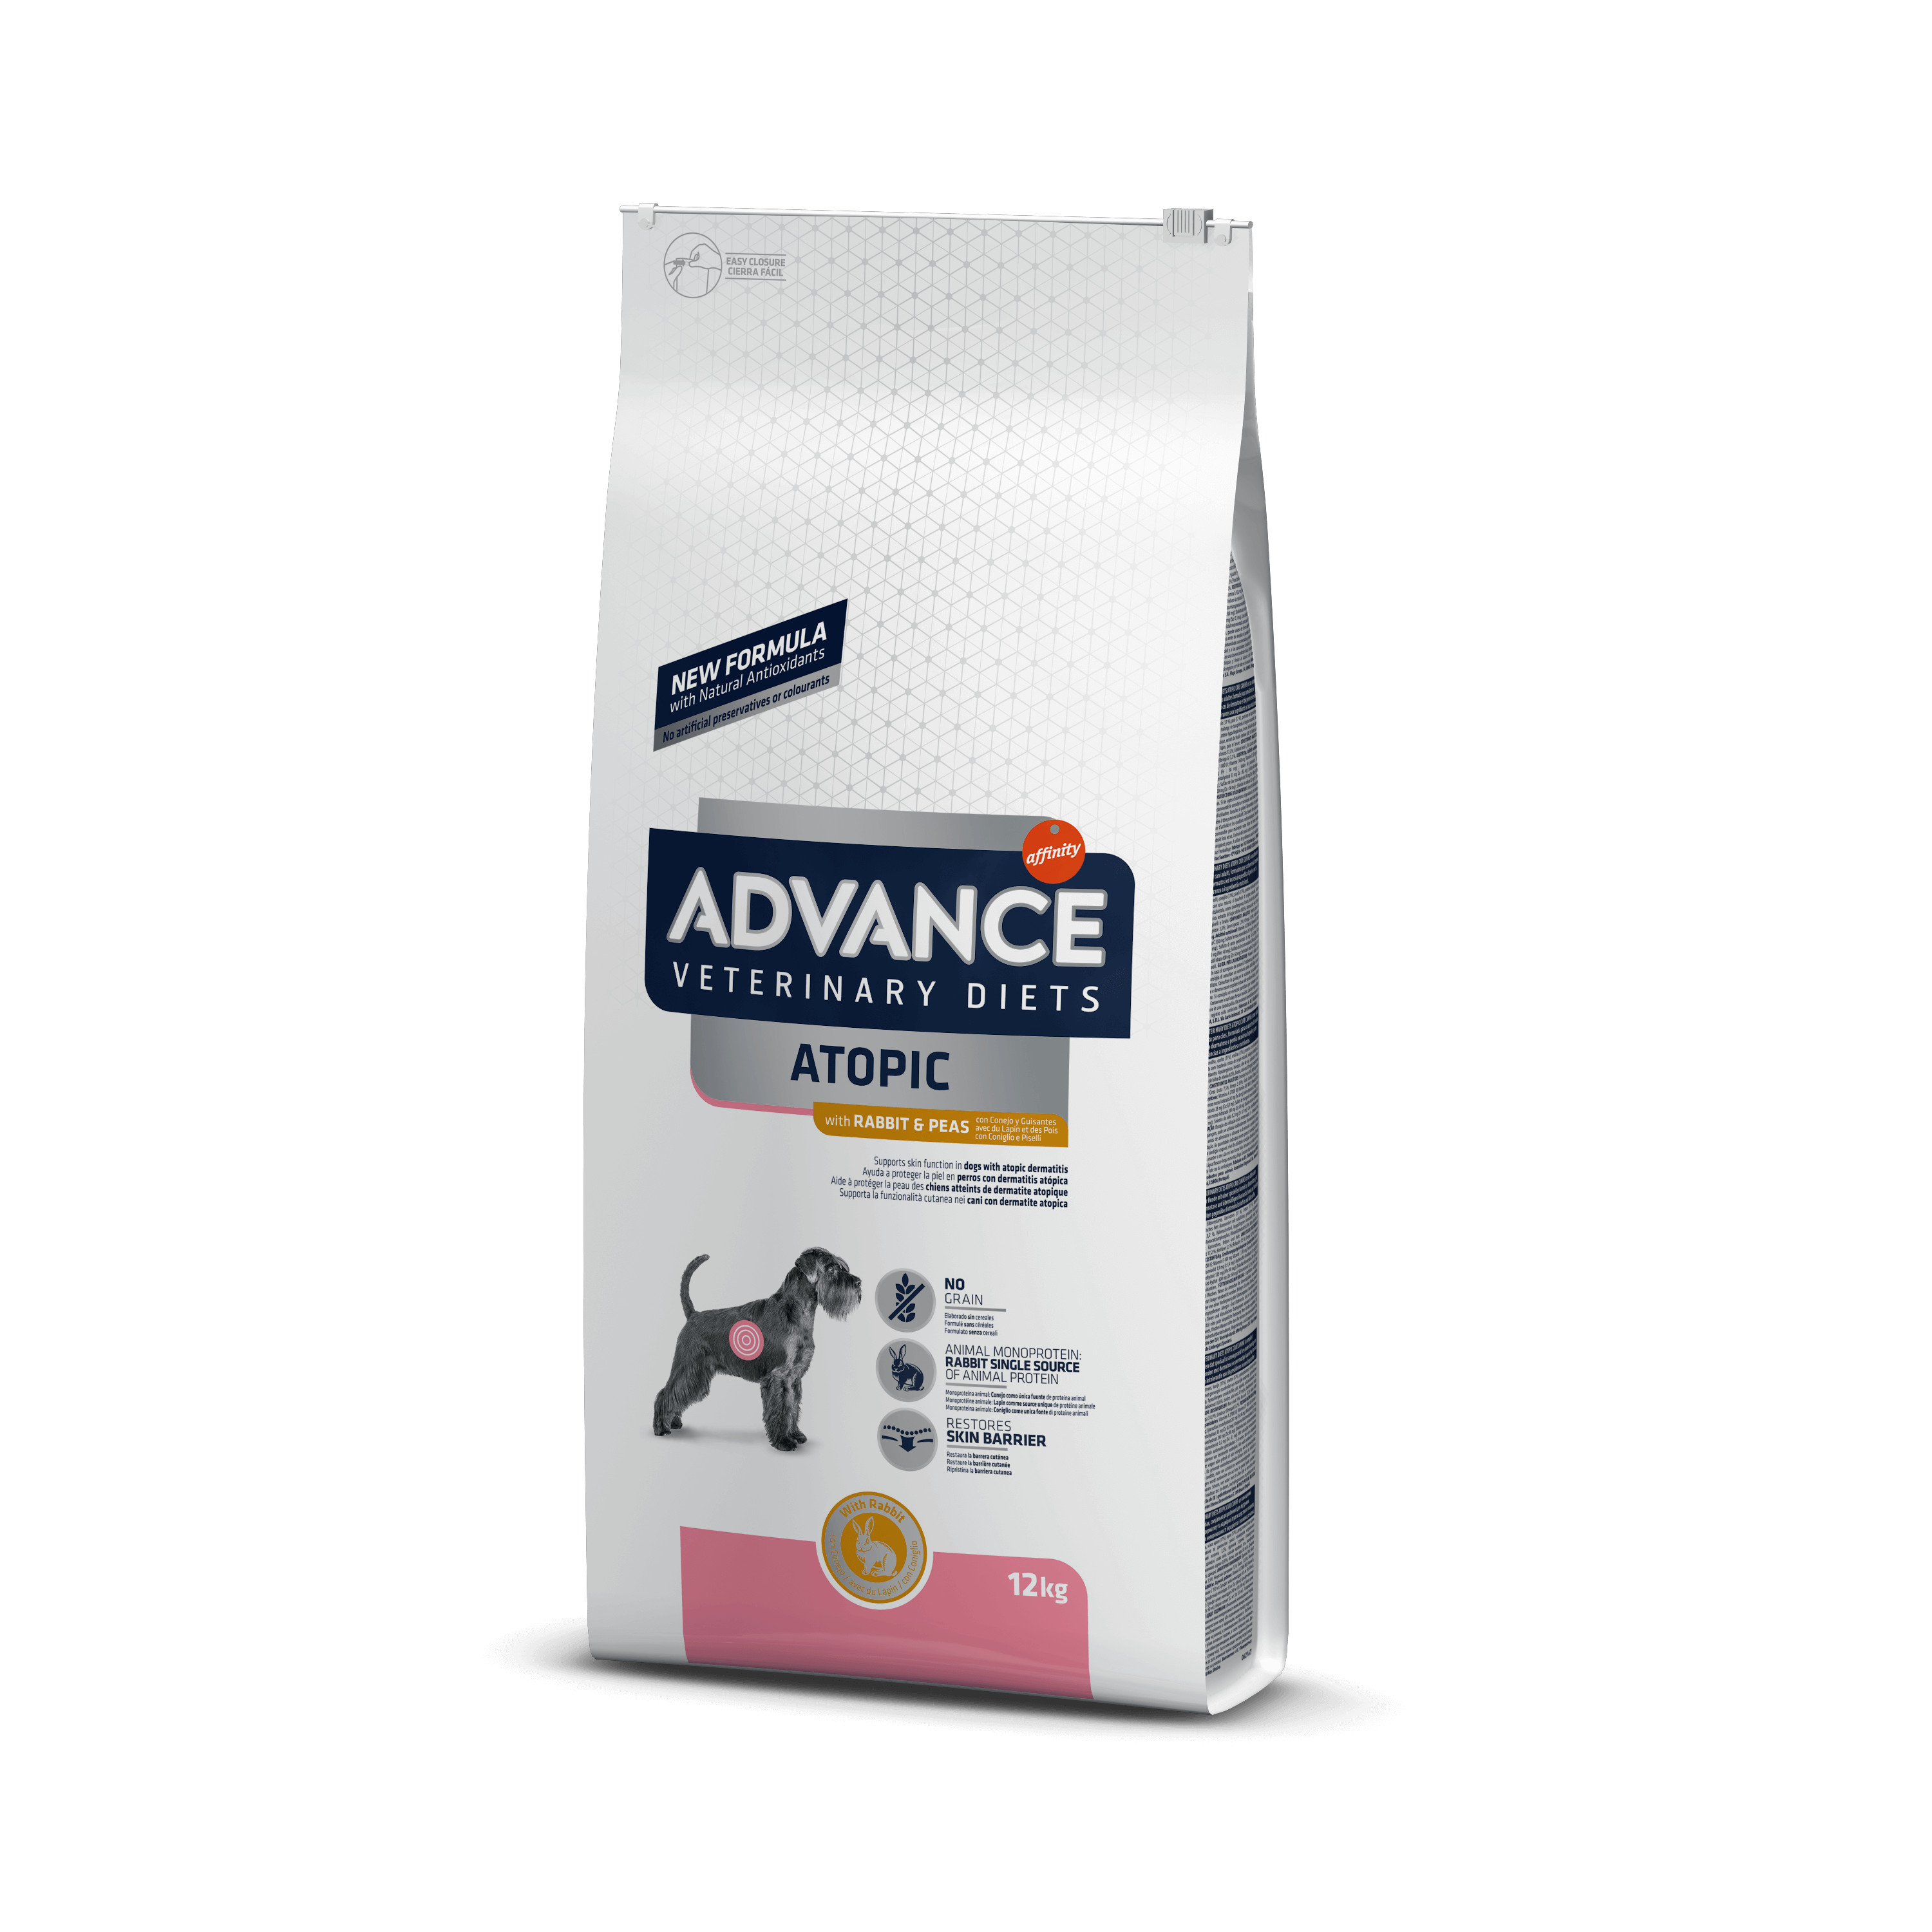 Afbeelding van 2 x 12 kg Advance Veterinary Diets Atopic Medium Maxi met konijn hondenvoer